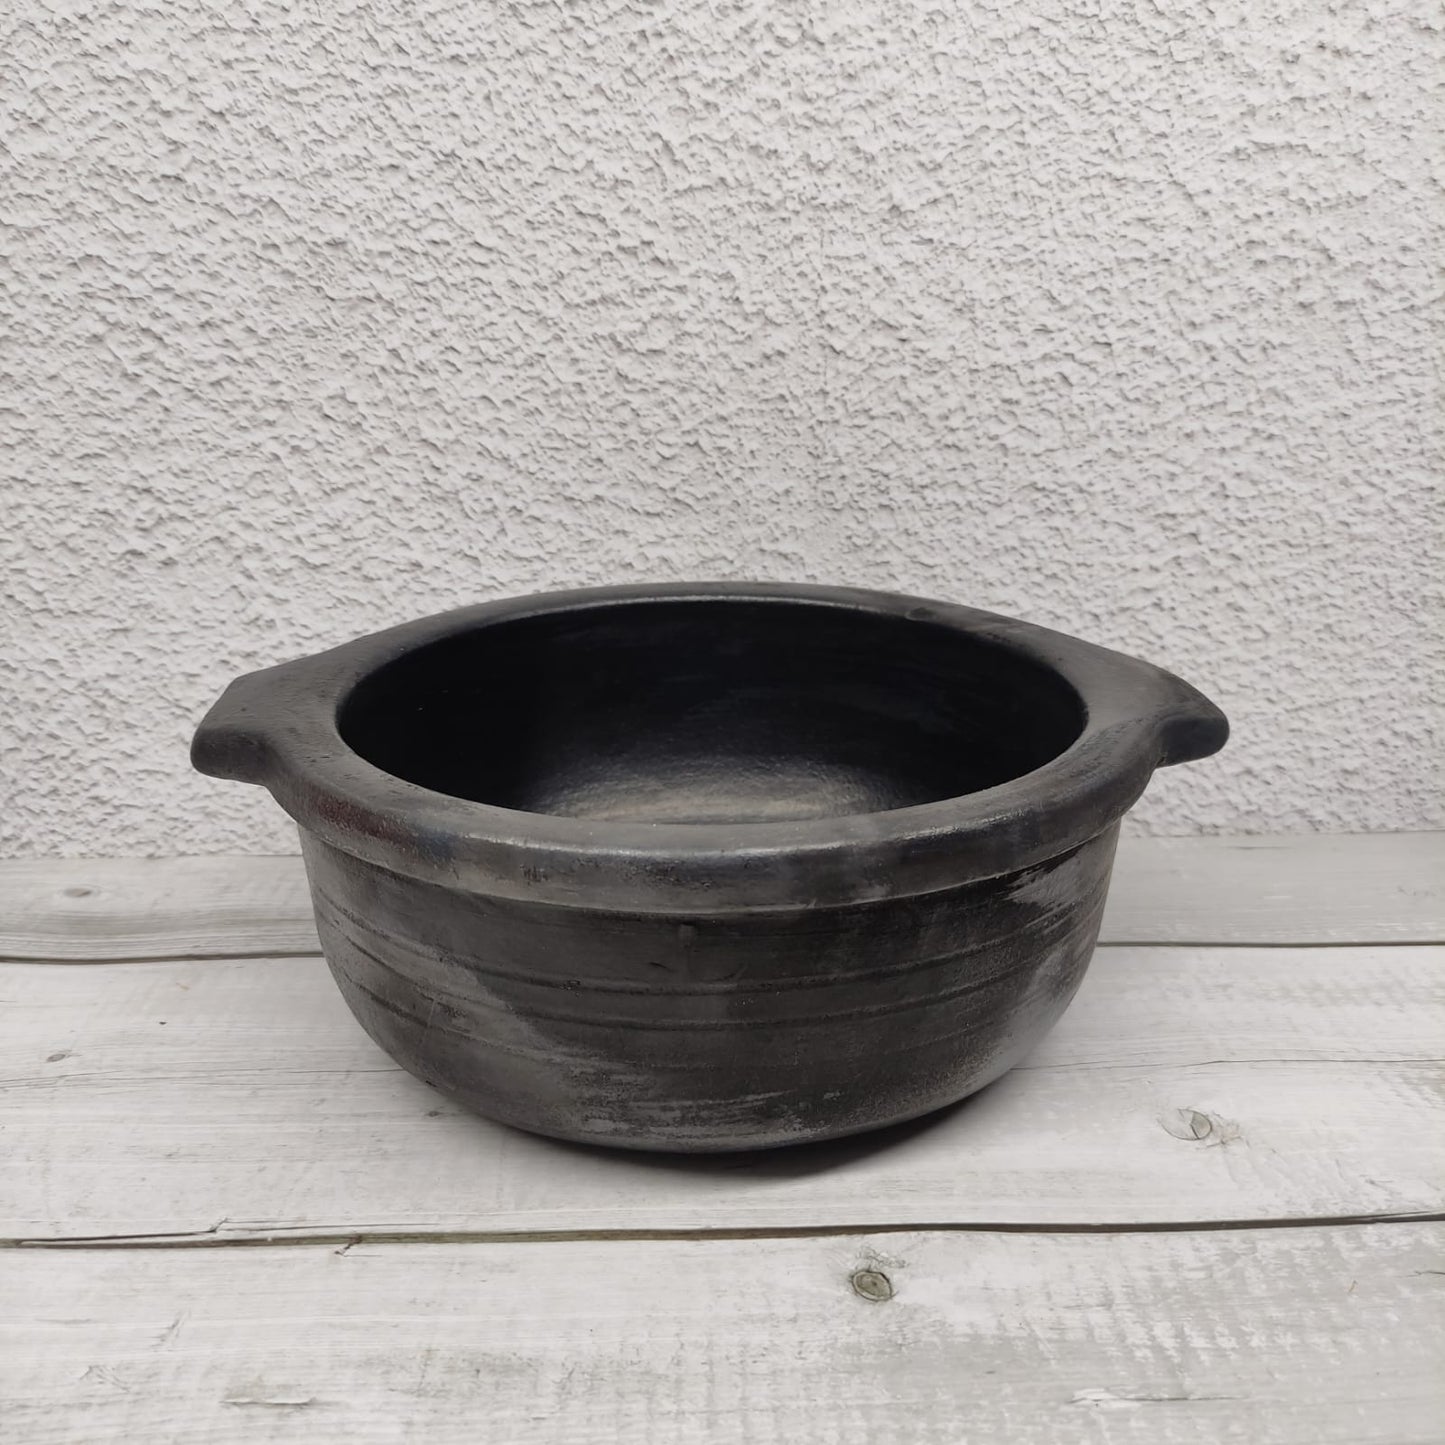 Black Pot Pan Type - OCB7